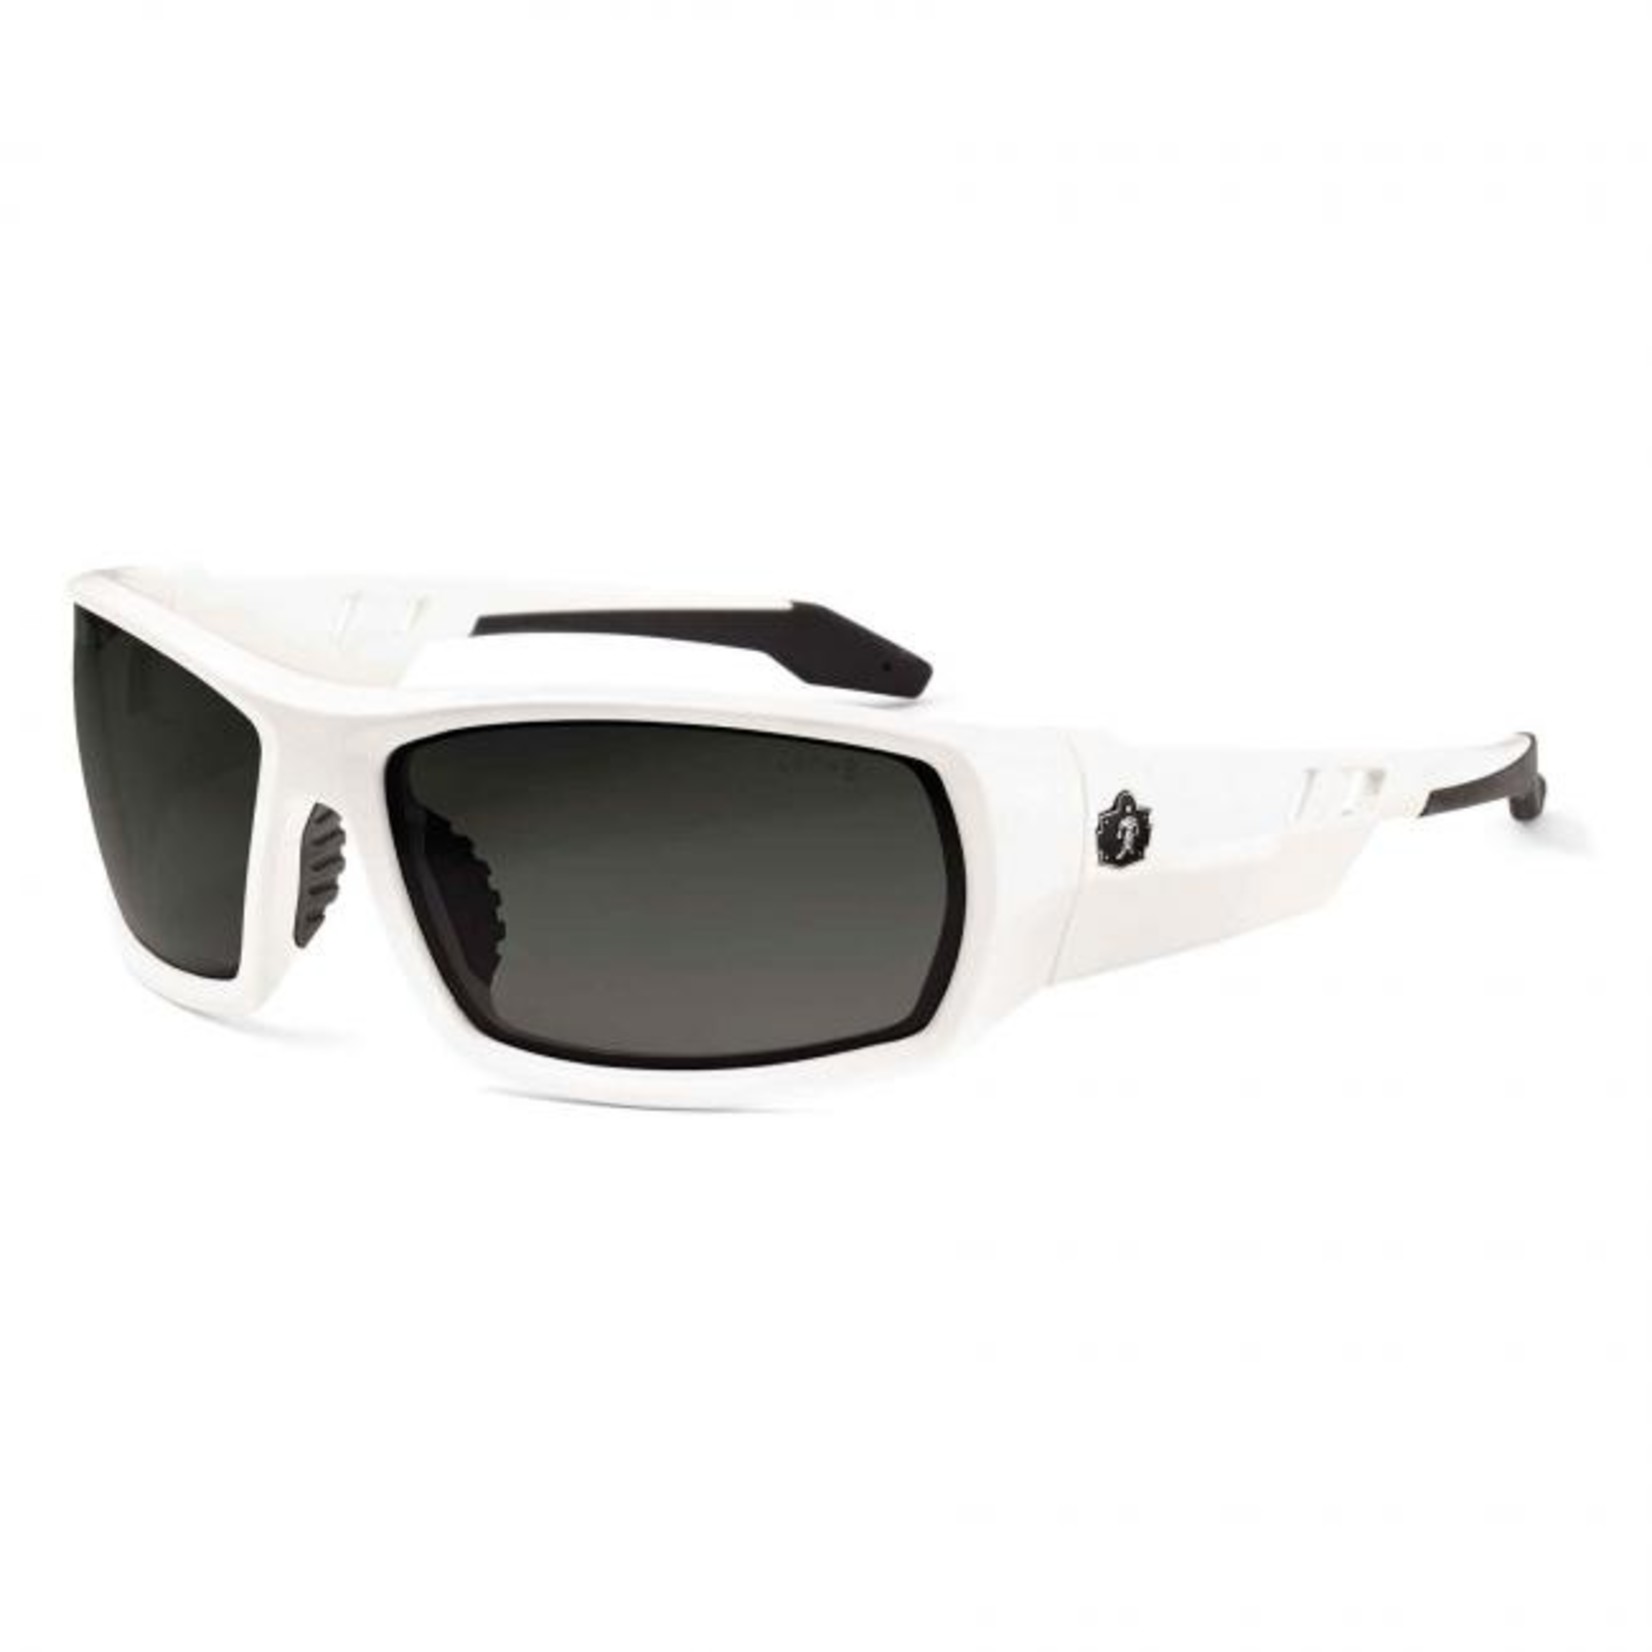 Ergodyne Skullerz Odin Safety Sunglasses White/Polarized Smoke (50231)